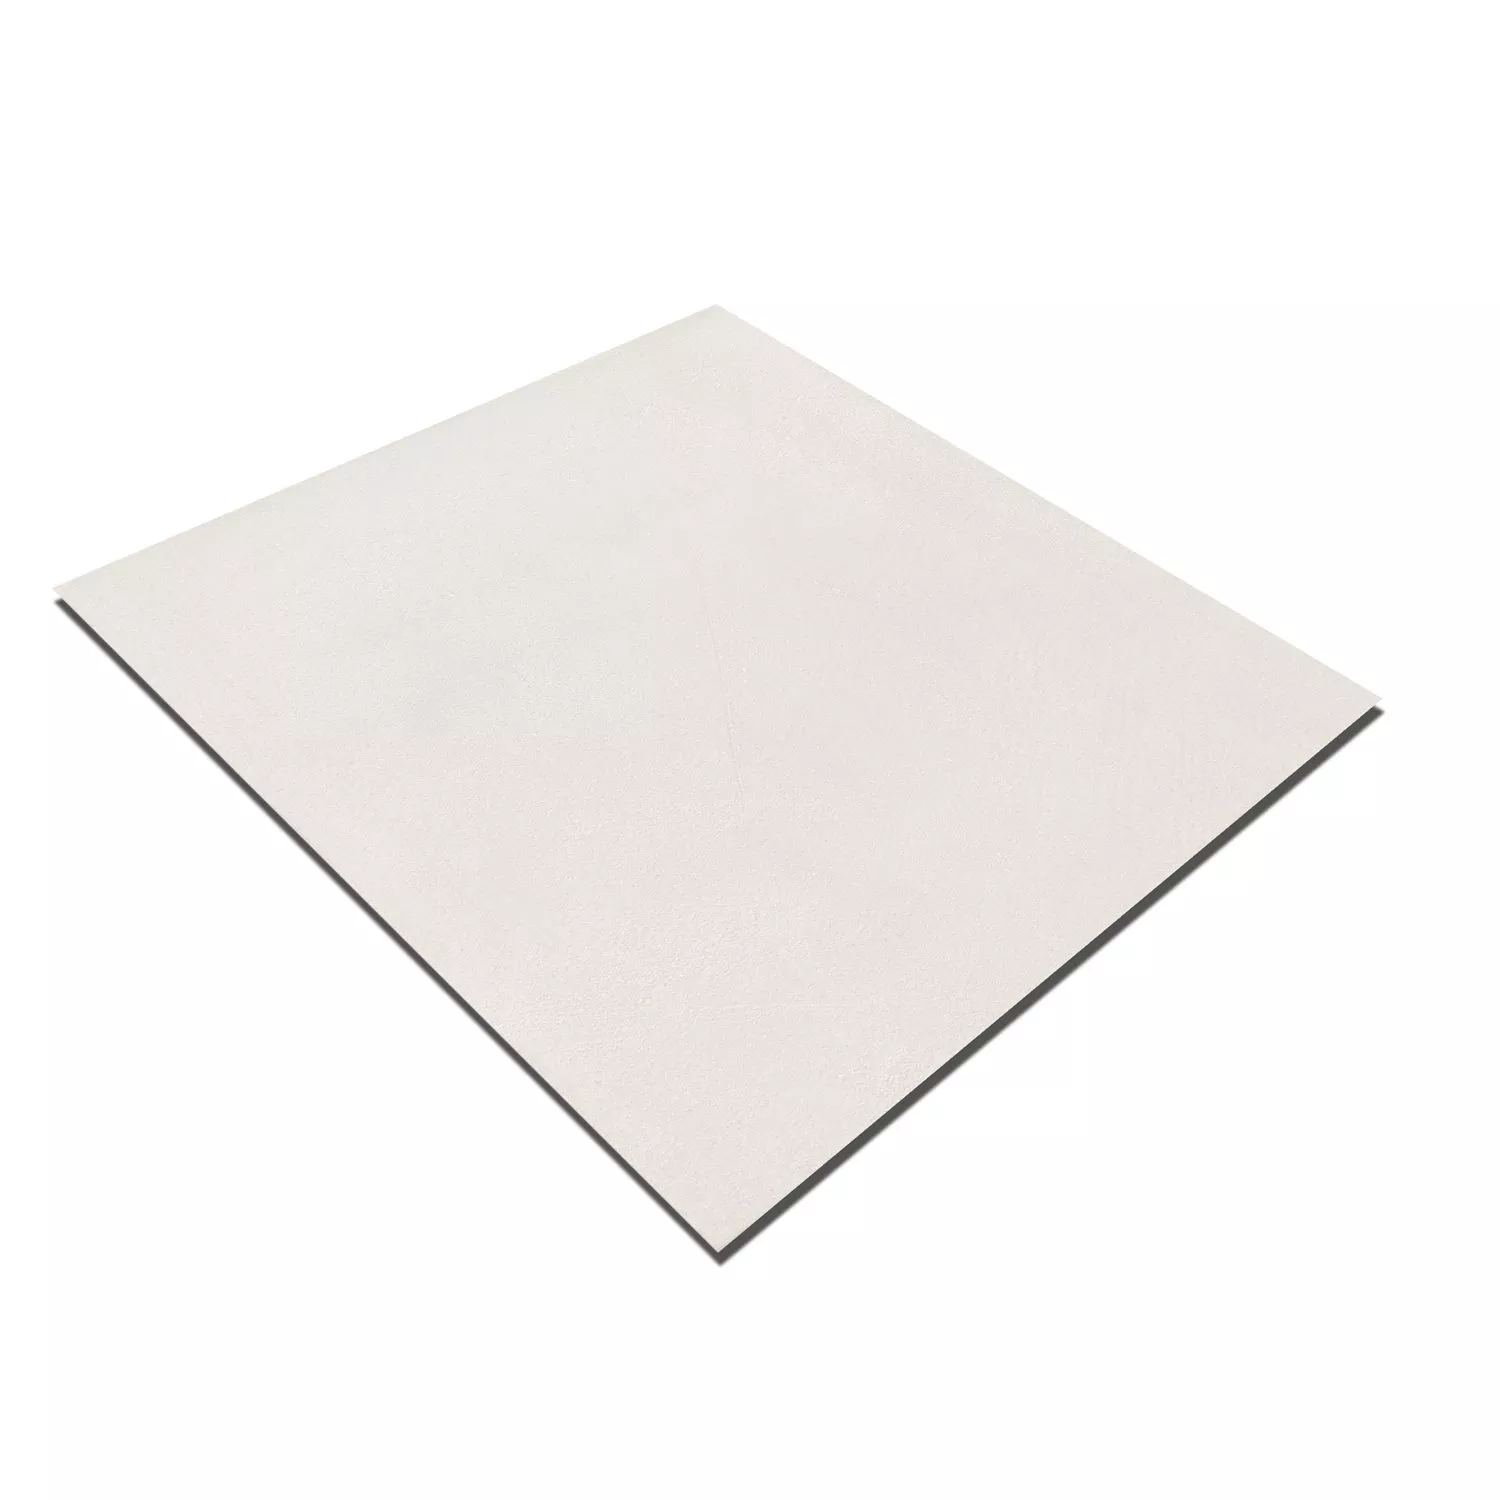 Prøve Cementfliser Optik Arena Frundlæggendeflise Hvid 18,6x18,6cm